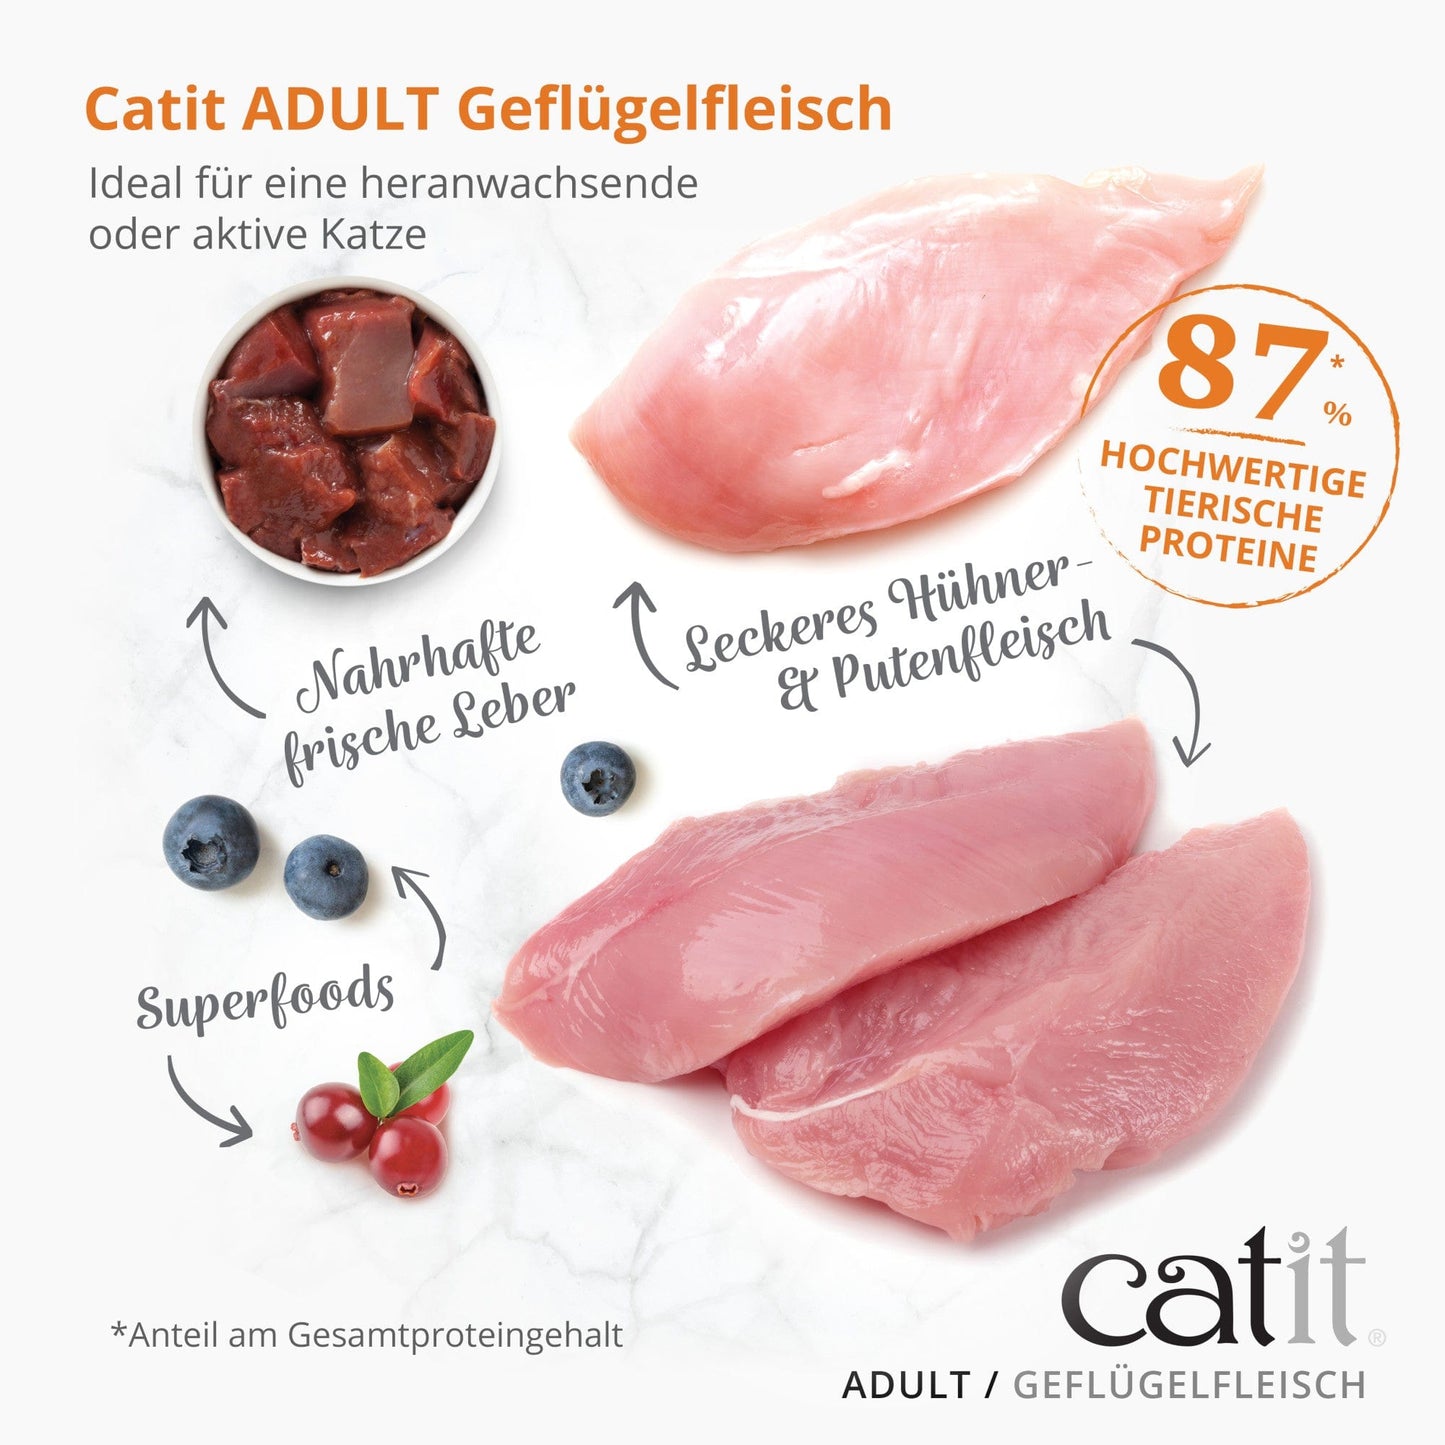 Catit Recipes – ADULT
Geflügelfleisch, 400 g